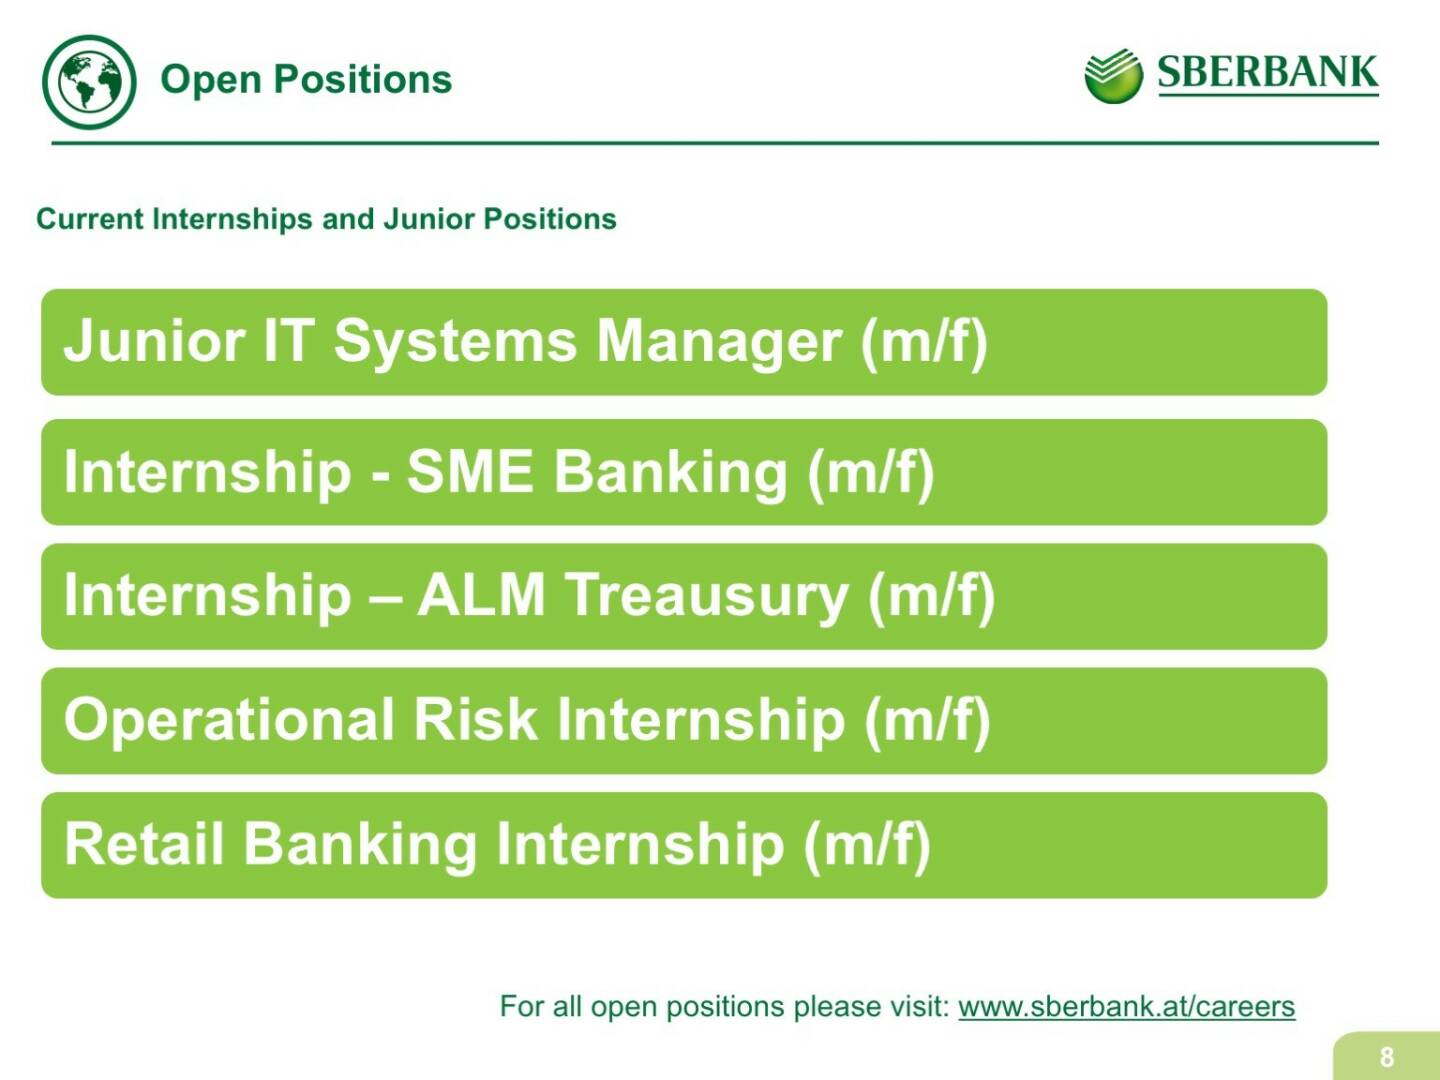 Sberbank Europe - Open Positions